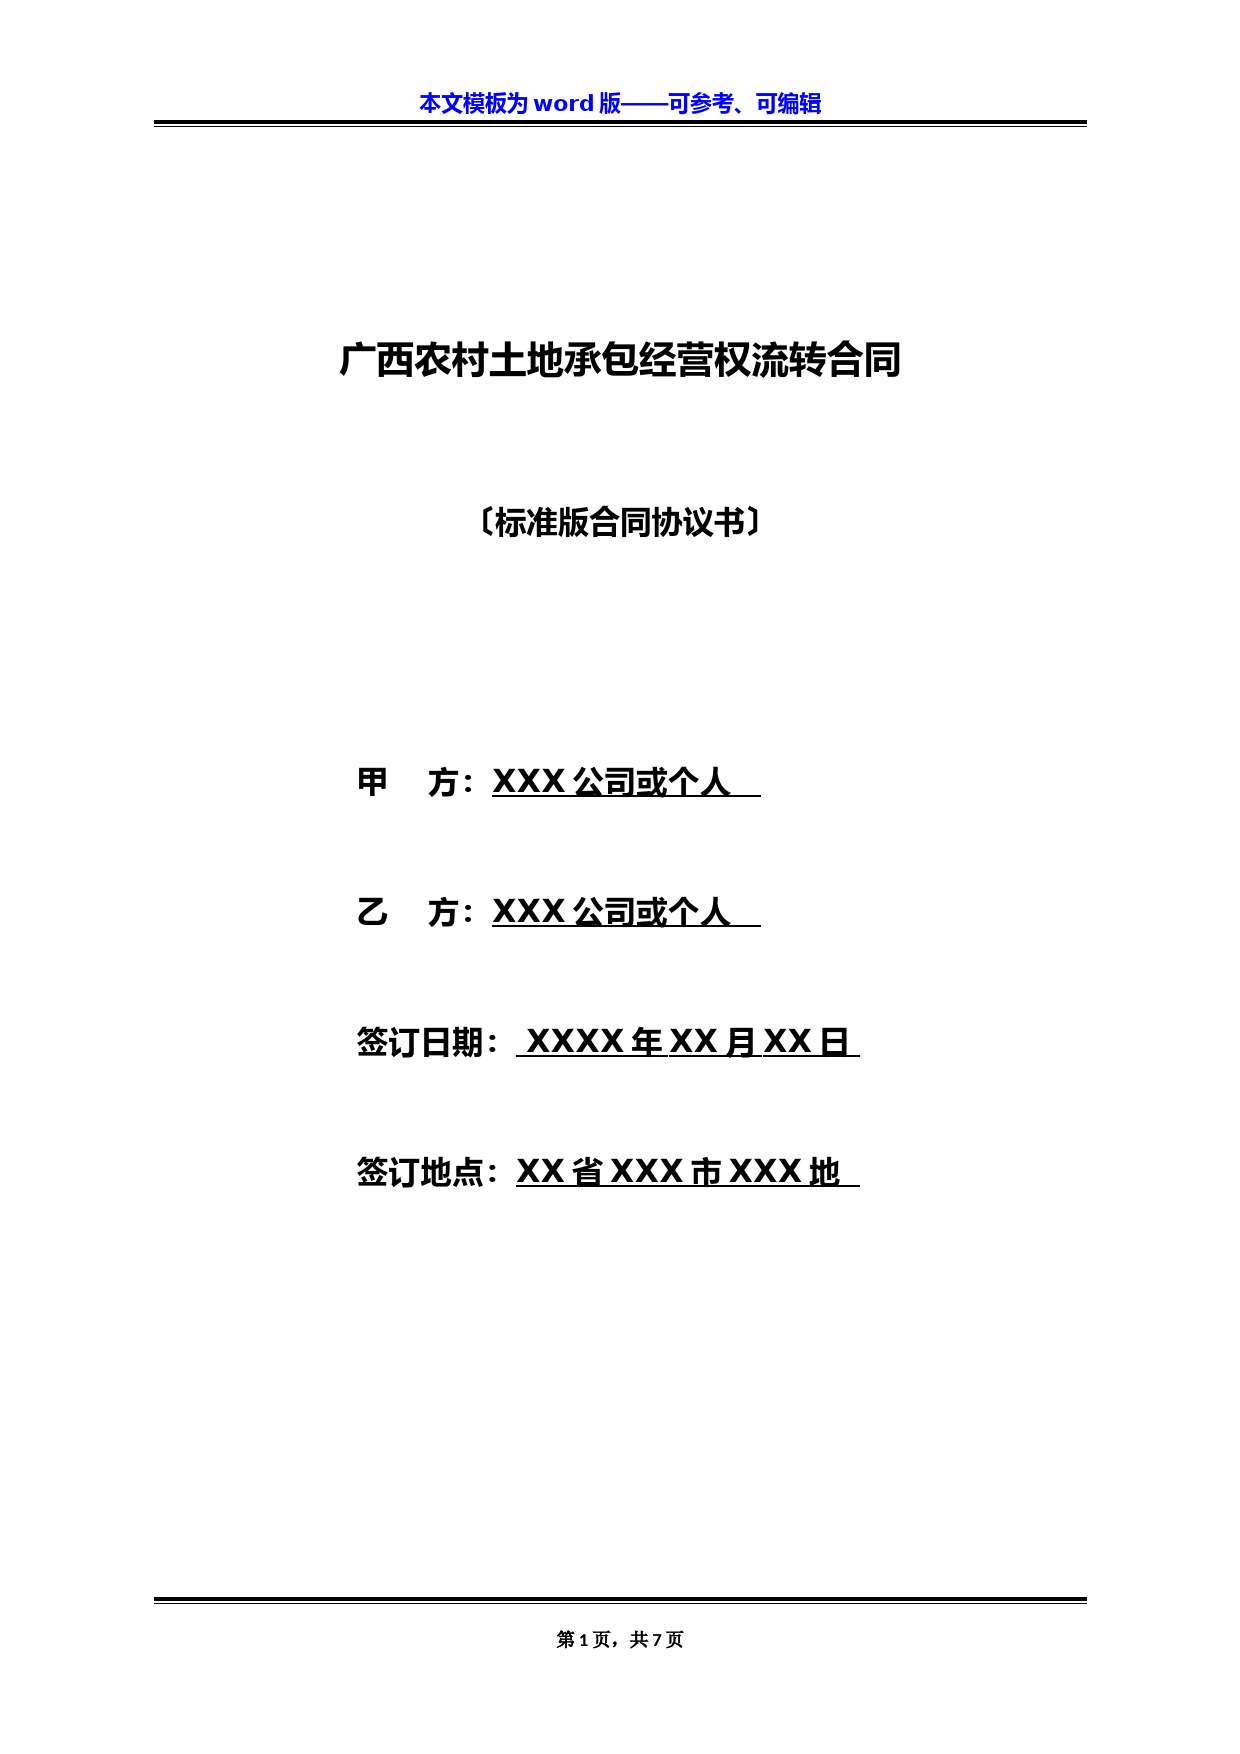 广西农村土地承包经营权流转合同(标准版)